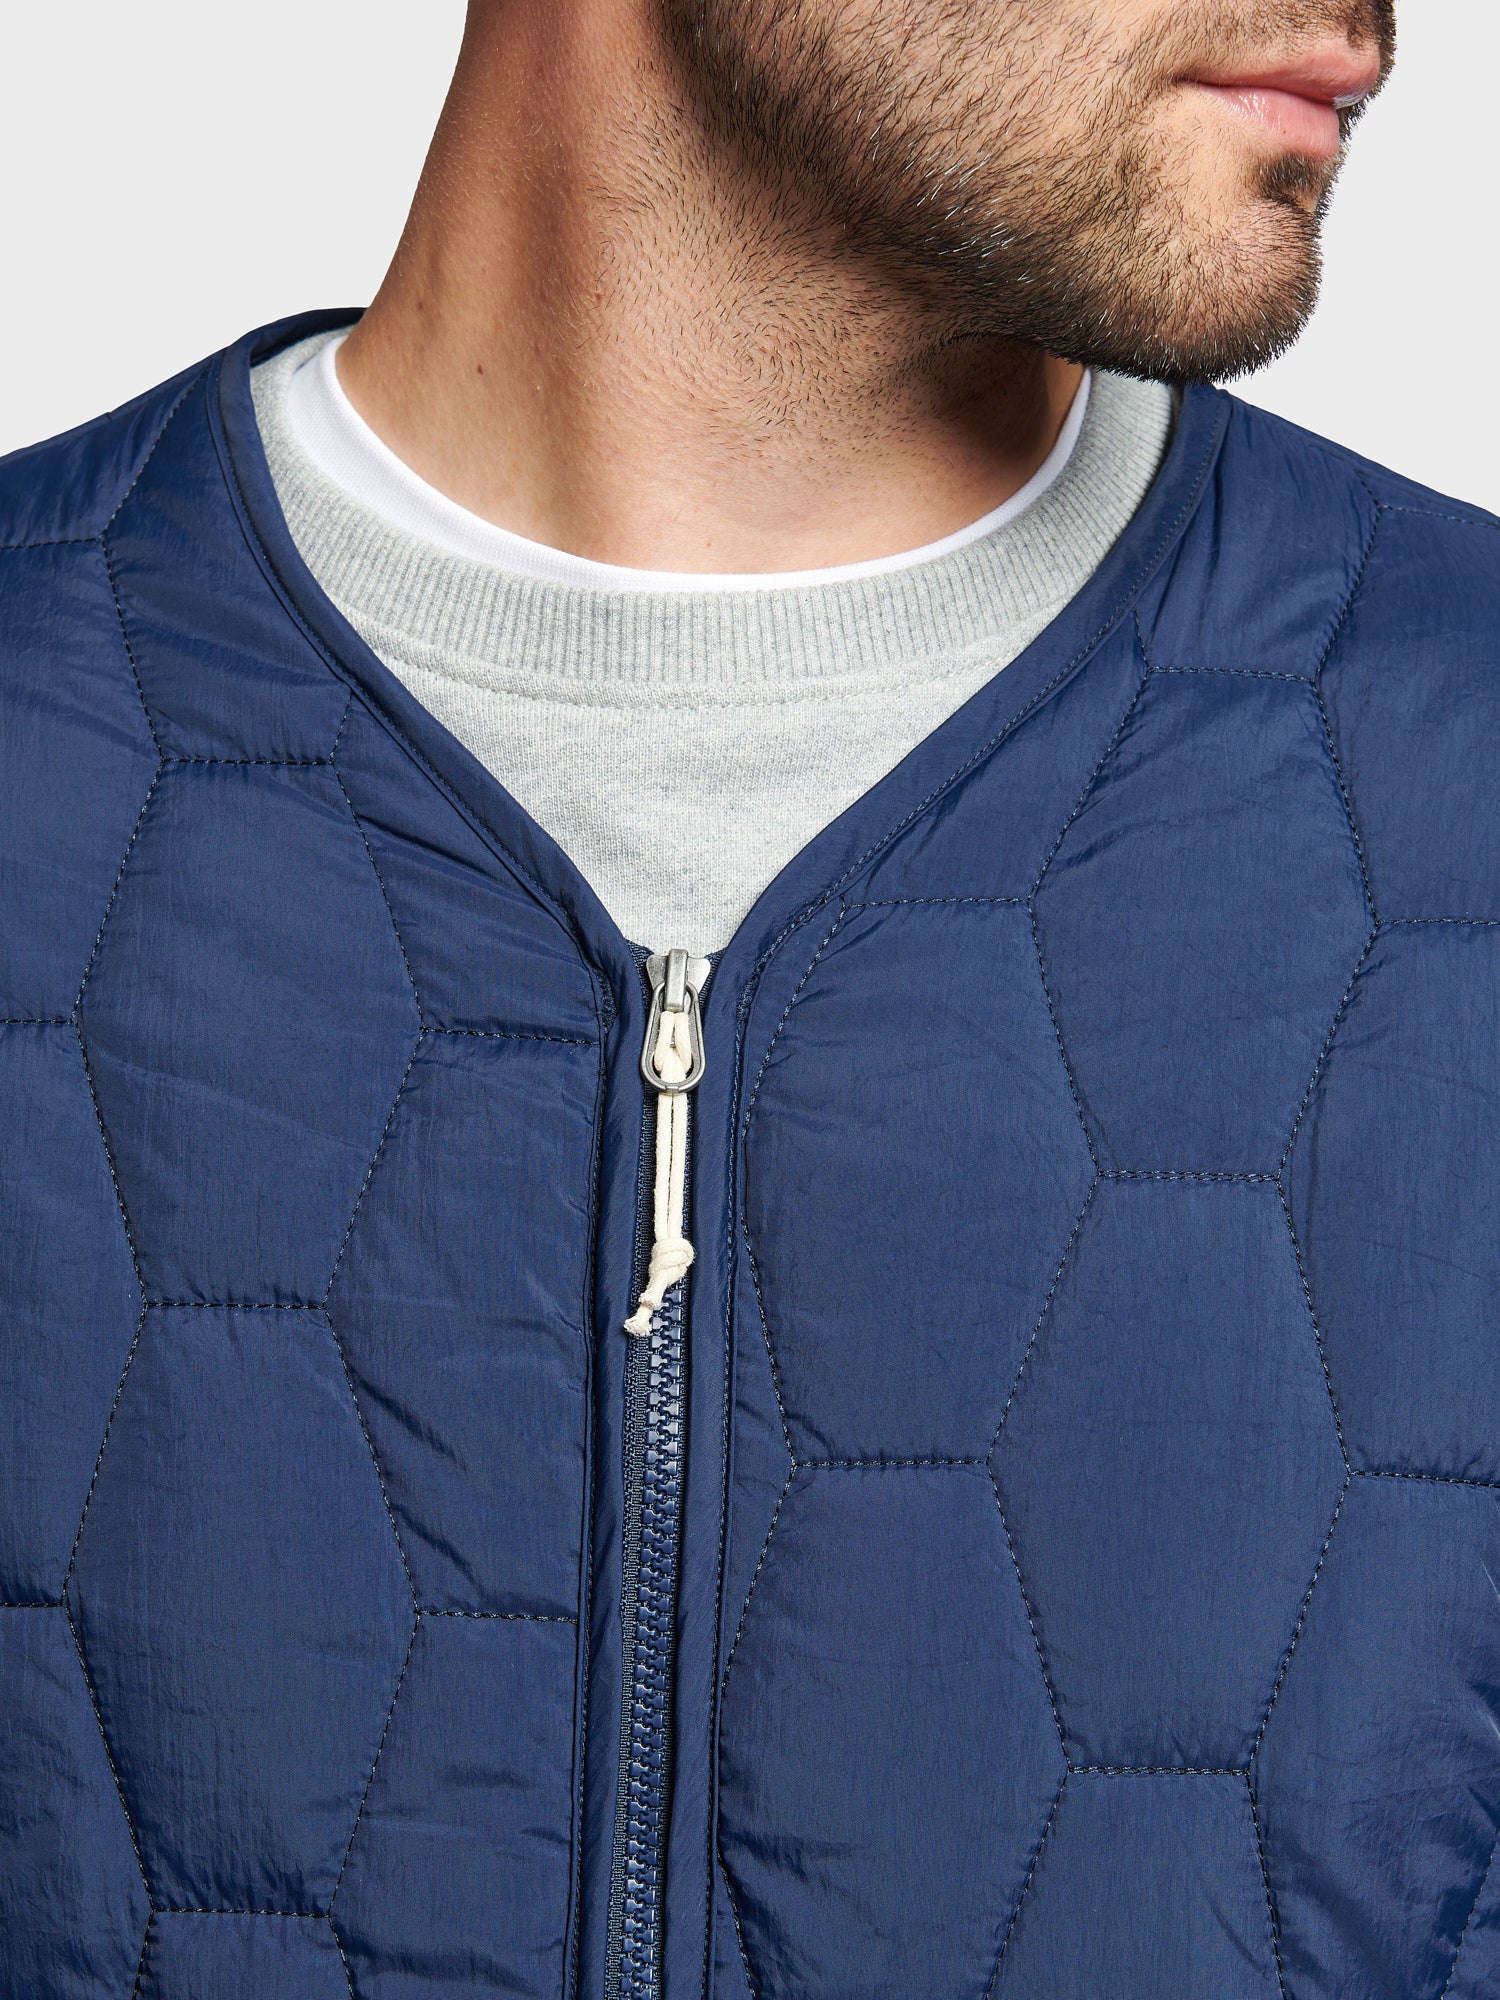 Hexagon Quilt Liner Jacket in Navy Blue